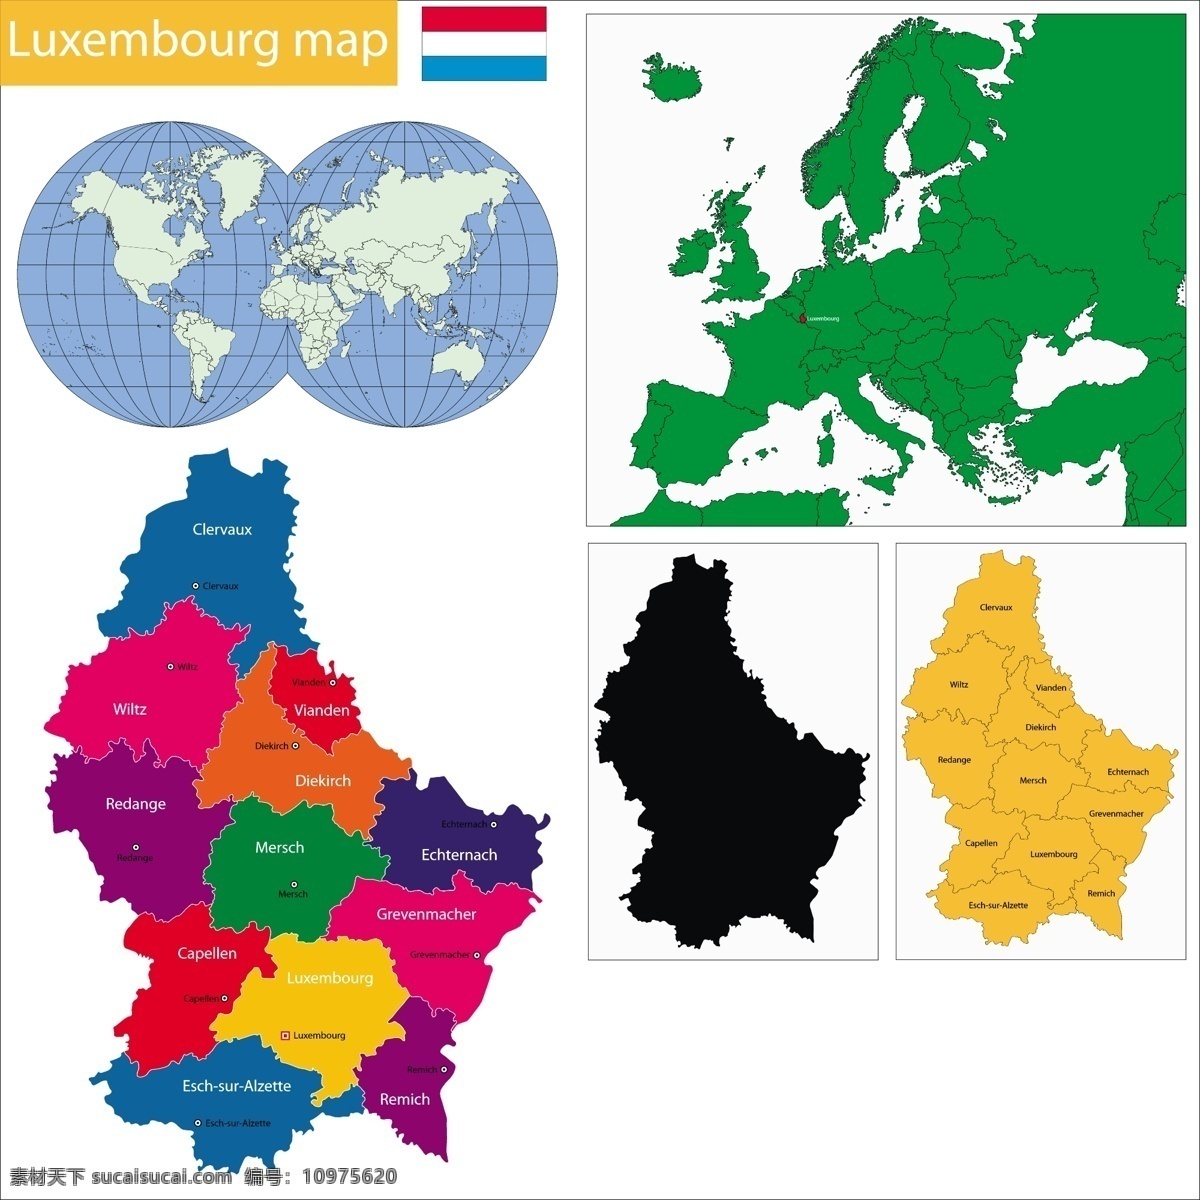 卢森堡 国家 地图 矢量 模板下载 国旗 世界地图 彩色地图 世界版图 矢量地图 生活百科 矢量素材 白色